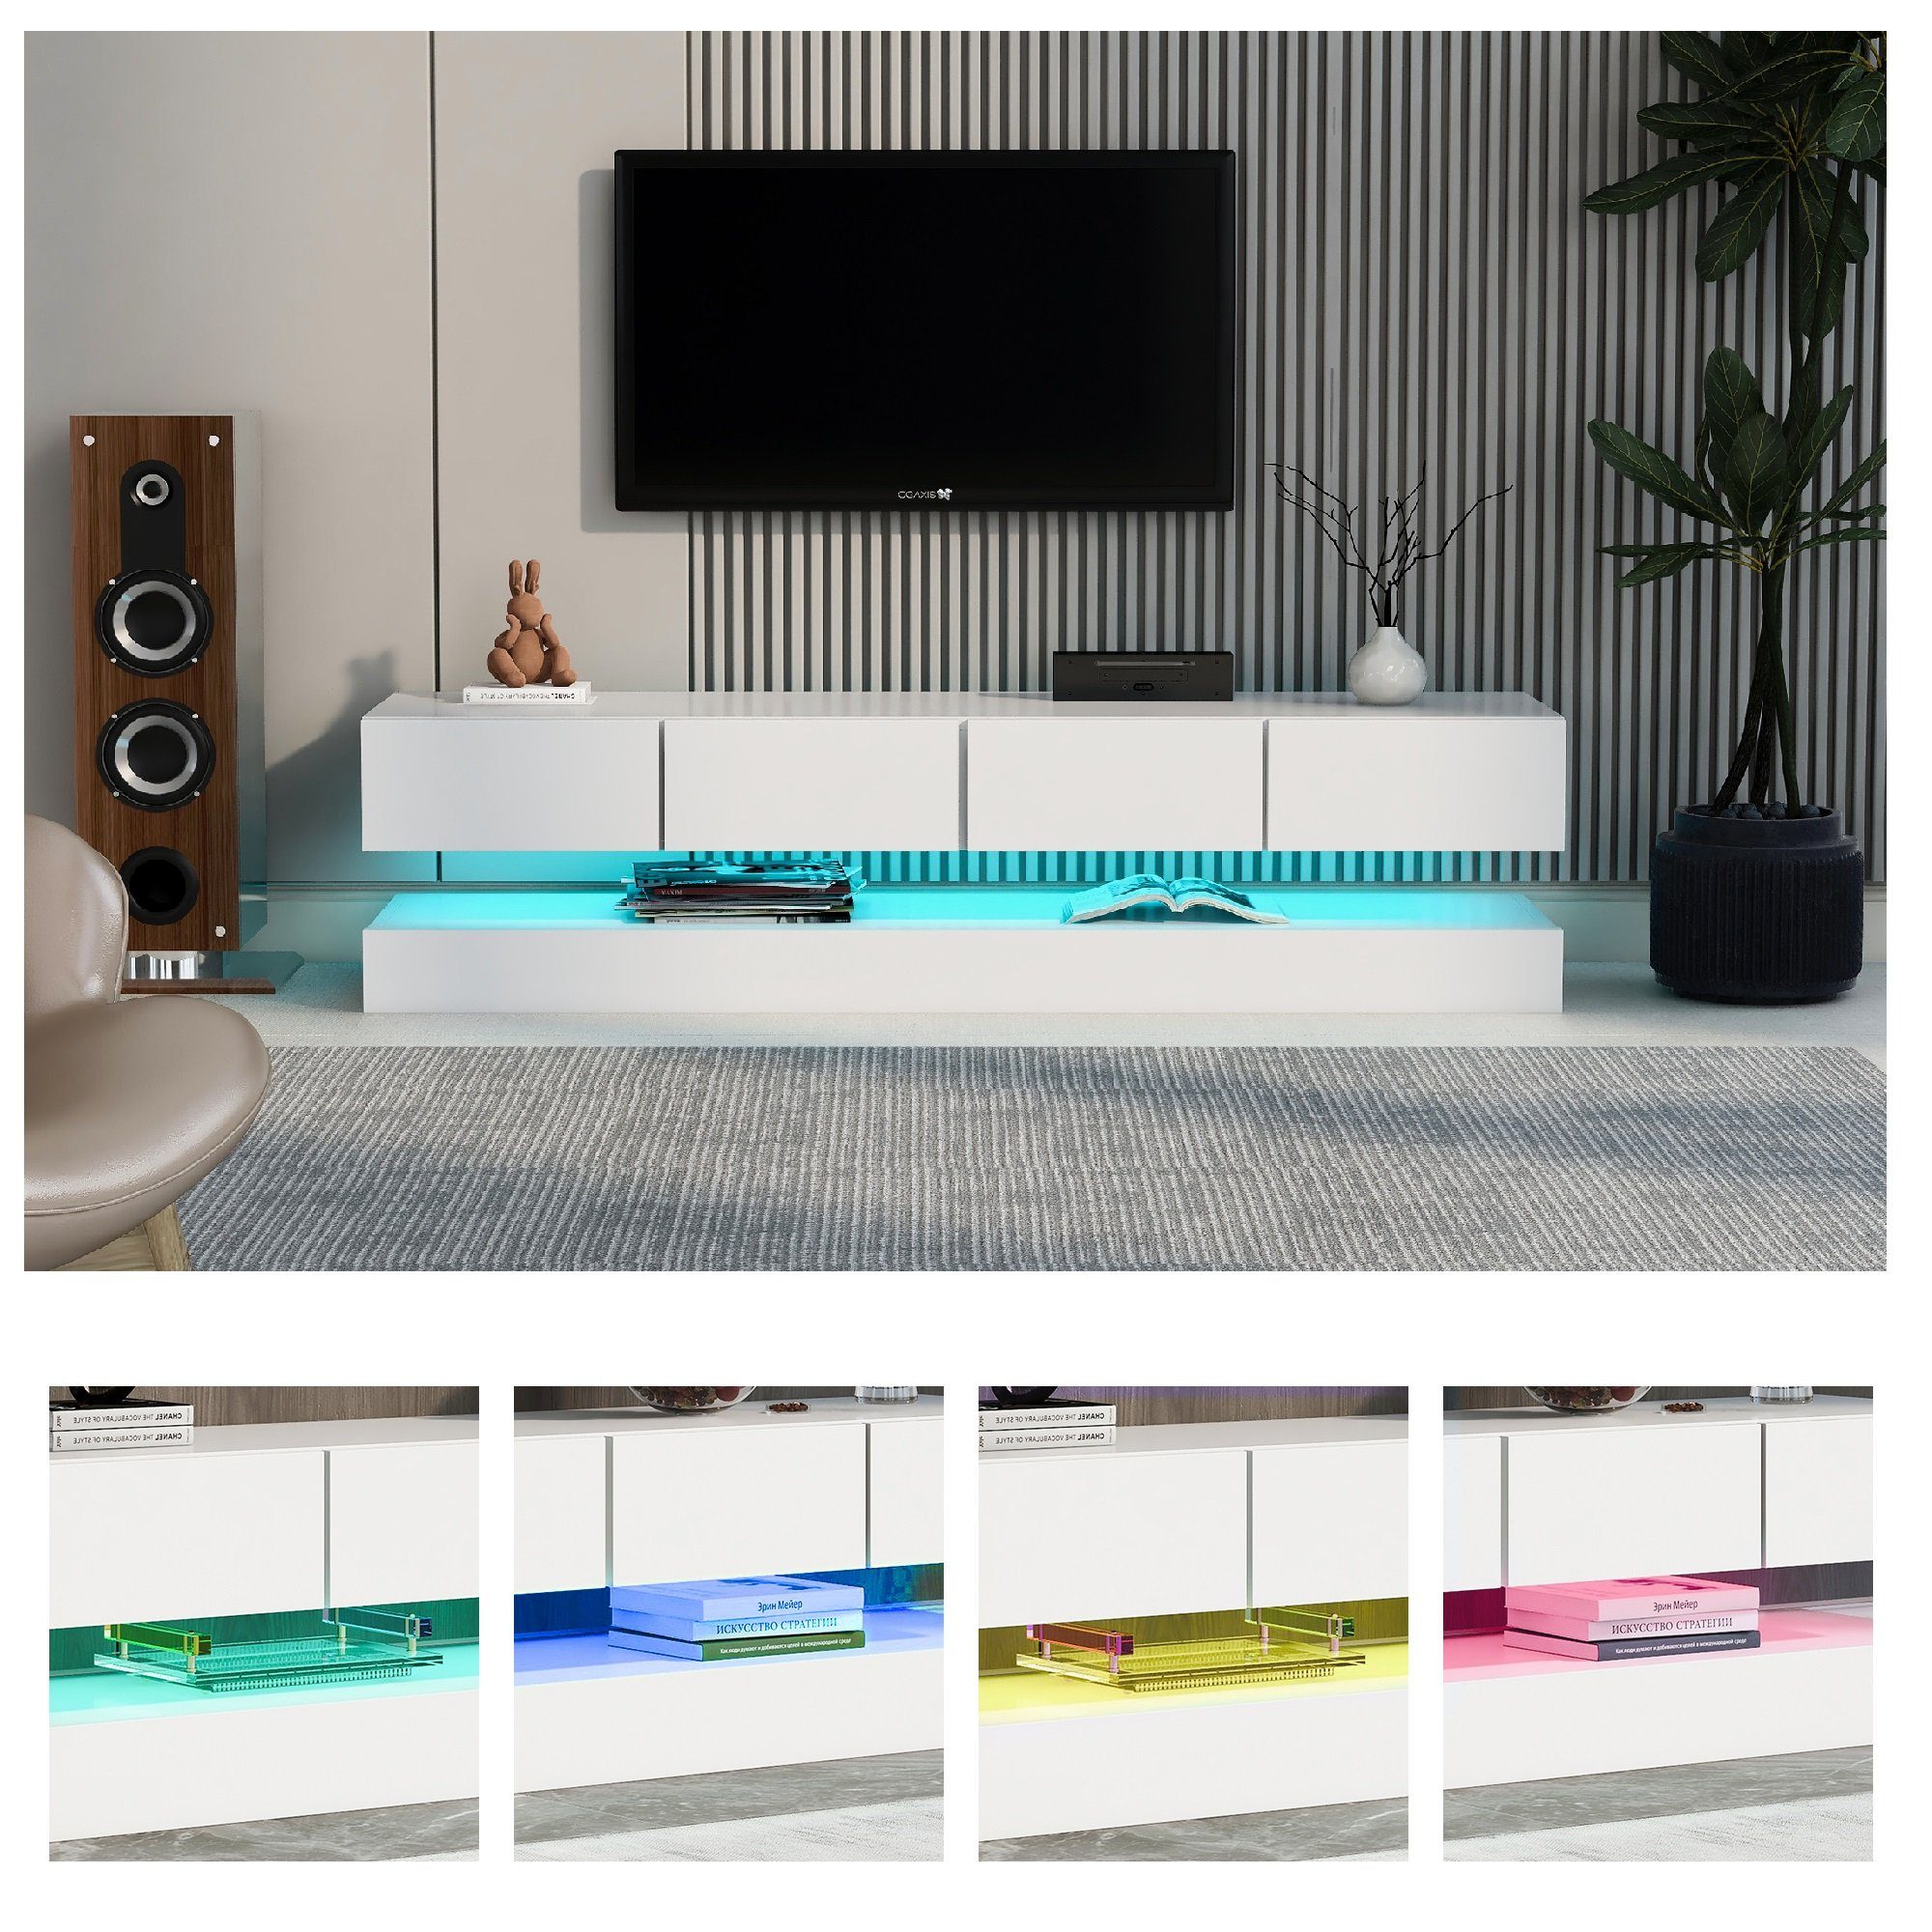 Fangqi Lowboard »LED TV Lowboard, Wandmontierter TV-Board, hochglanz Weiß TV-Schrank,  TV-Ständer, TV-Möbel, Fernsehschrank mit 2 Schränken und 4 großen  Schubladen, 16-farbige LED-Beleuchtung Wandschrank, 4 dynamisch Modi,  Breite 130cm, für bis zu 55